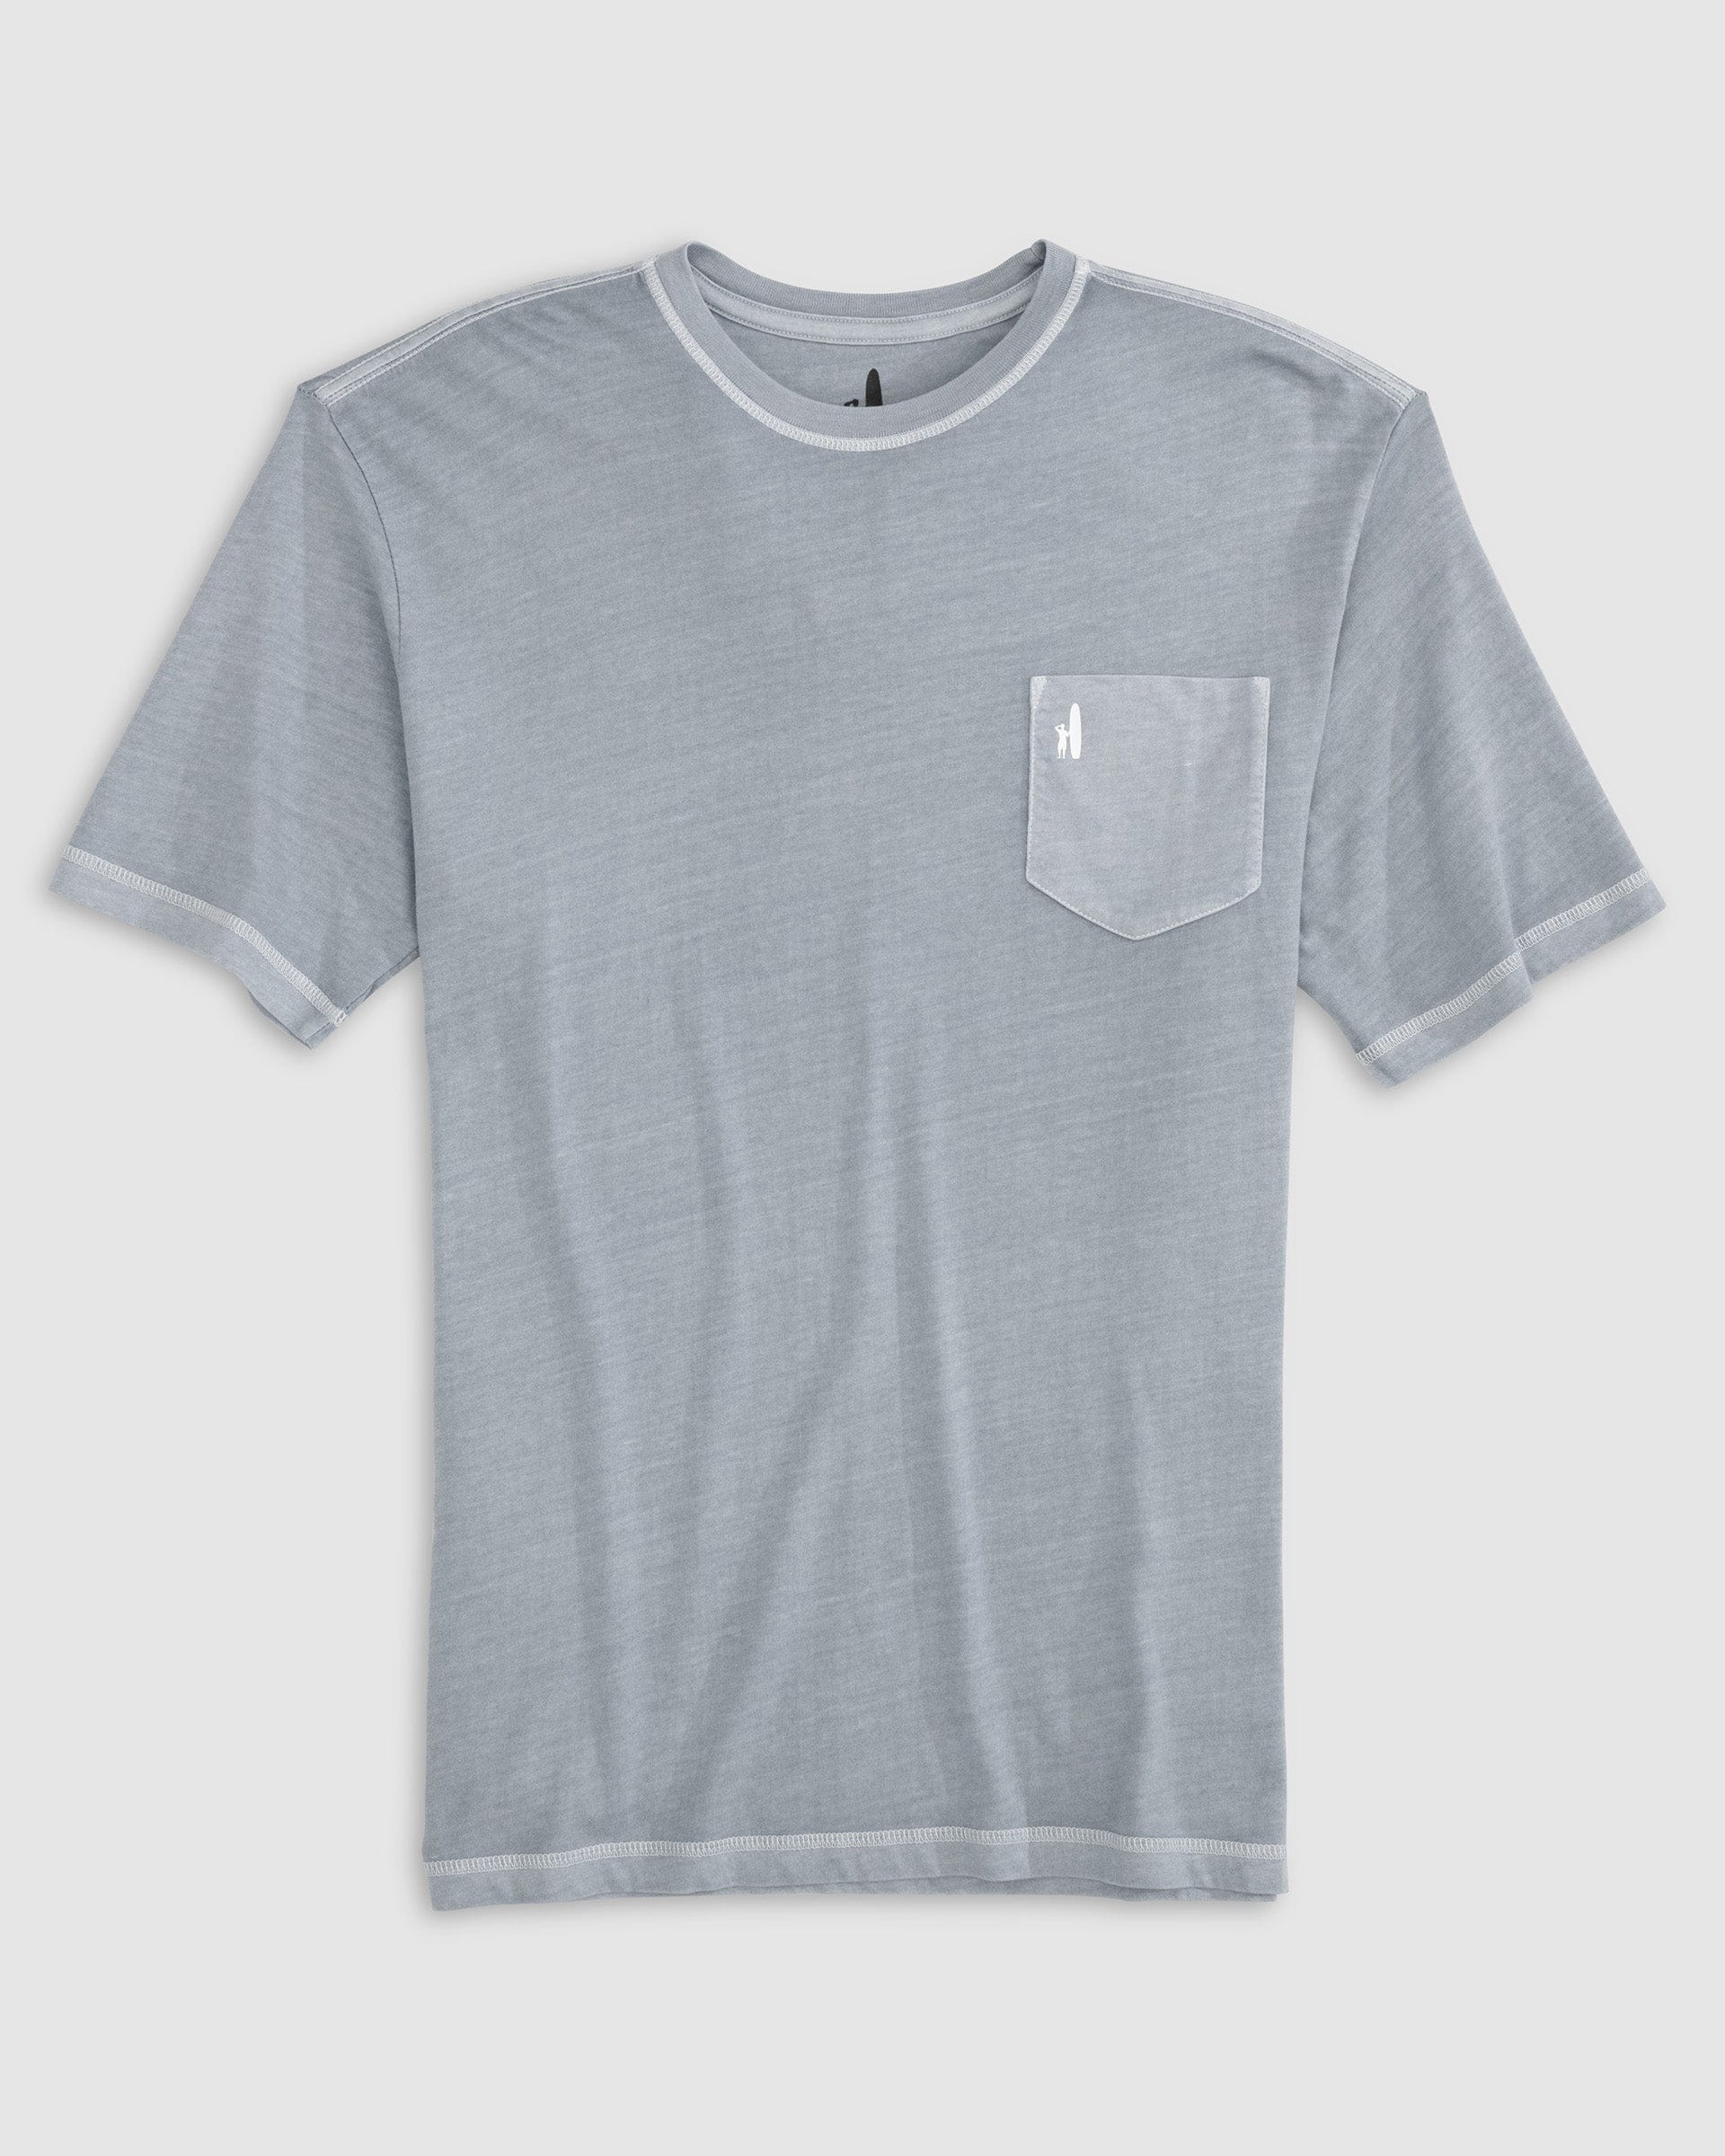 John Hyatt Clothing JO Glory Graphic T-Shirt